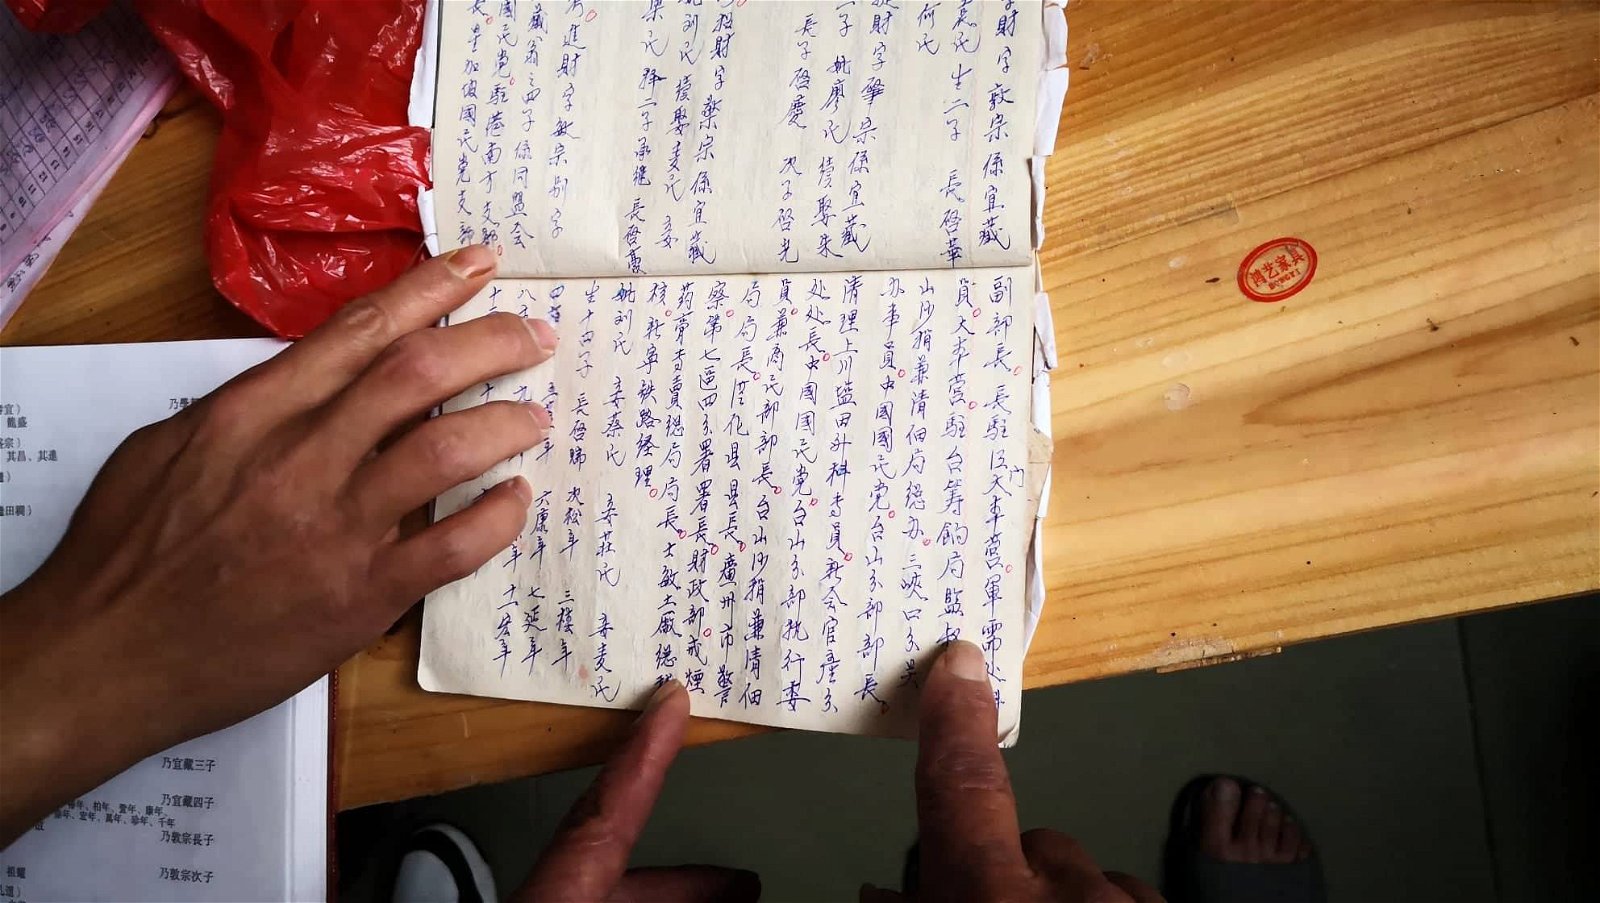 图为村里一名老者（据说是村里帮人看黄道吉日的老人）手写记录下来的历史。陈美娟从中翻找出关于祖父陈进财的事迹。